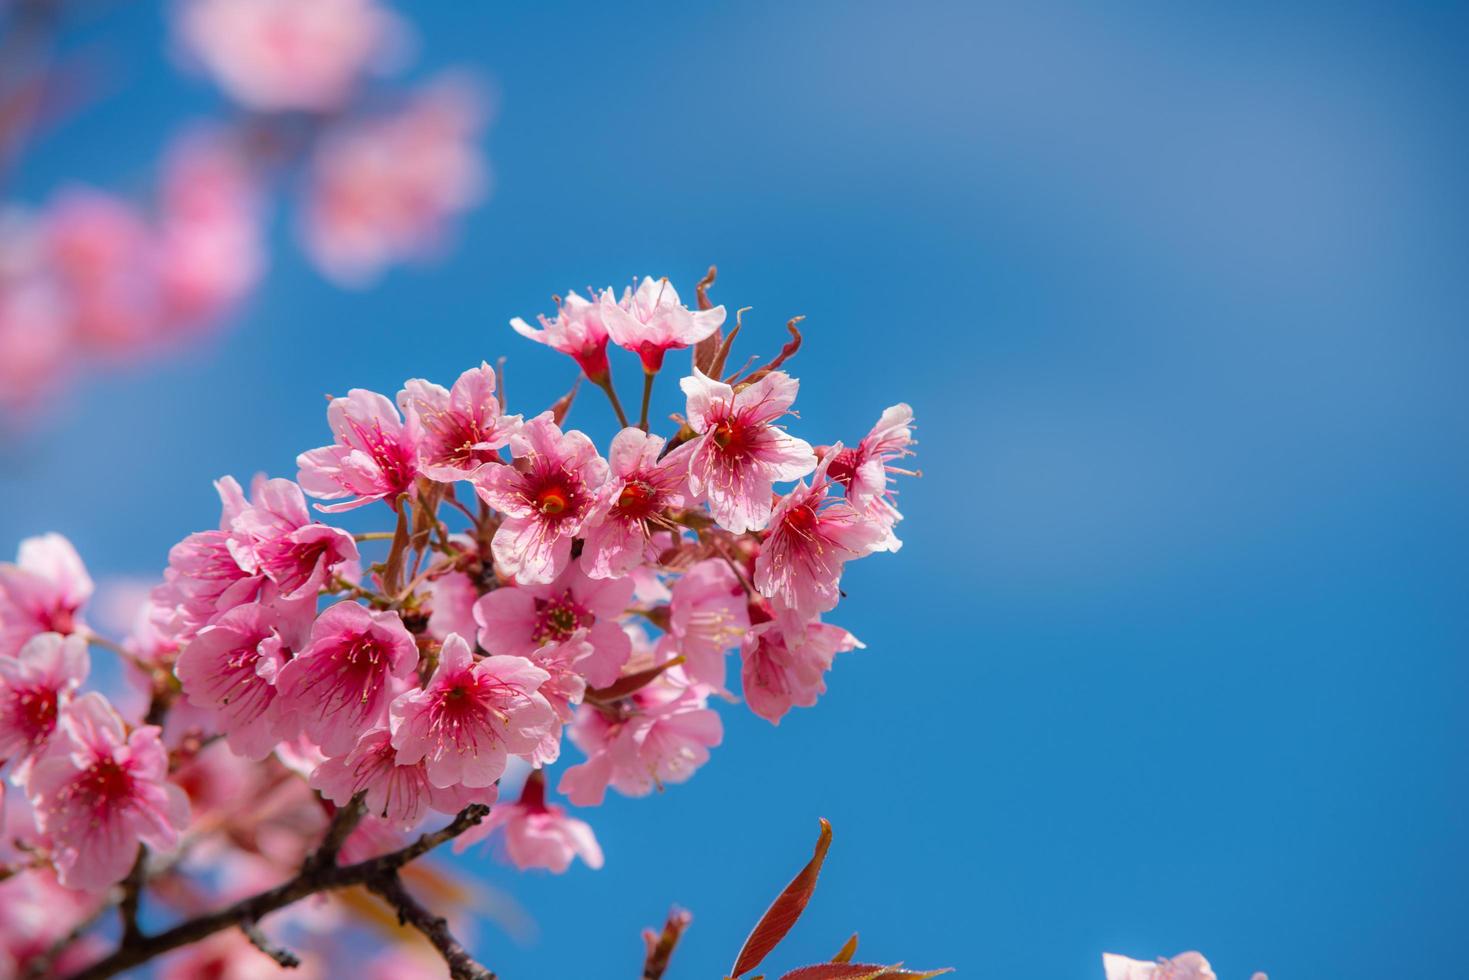 bela sakura ou flor de cerejeira na primavera foto